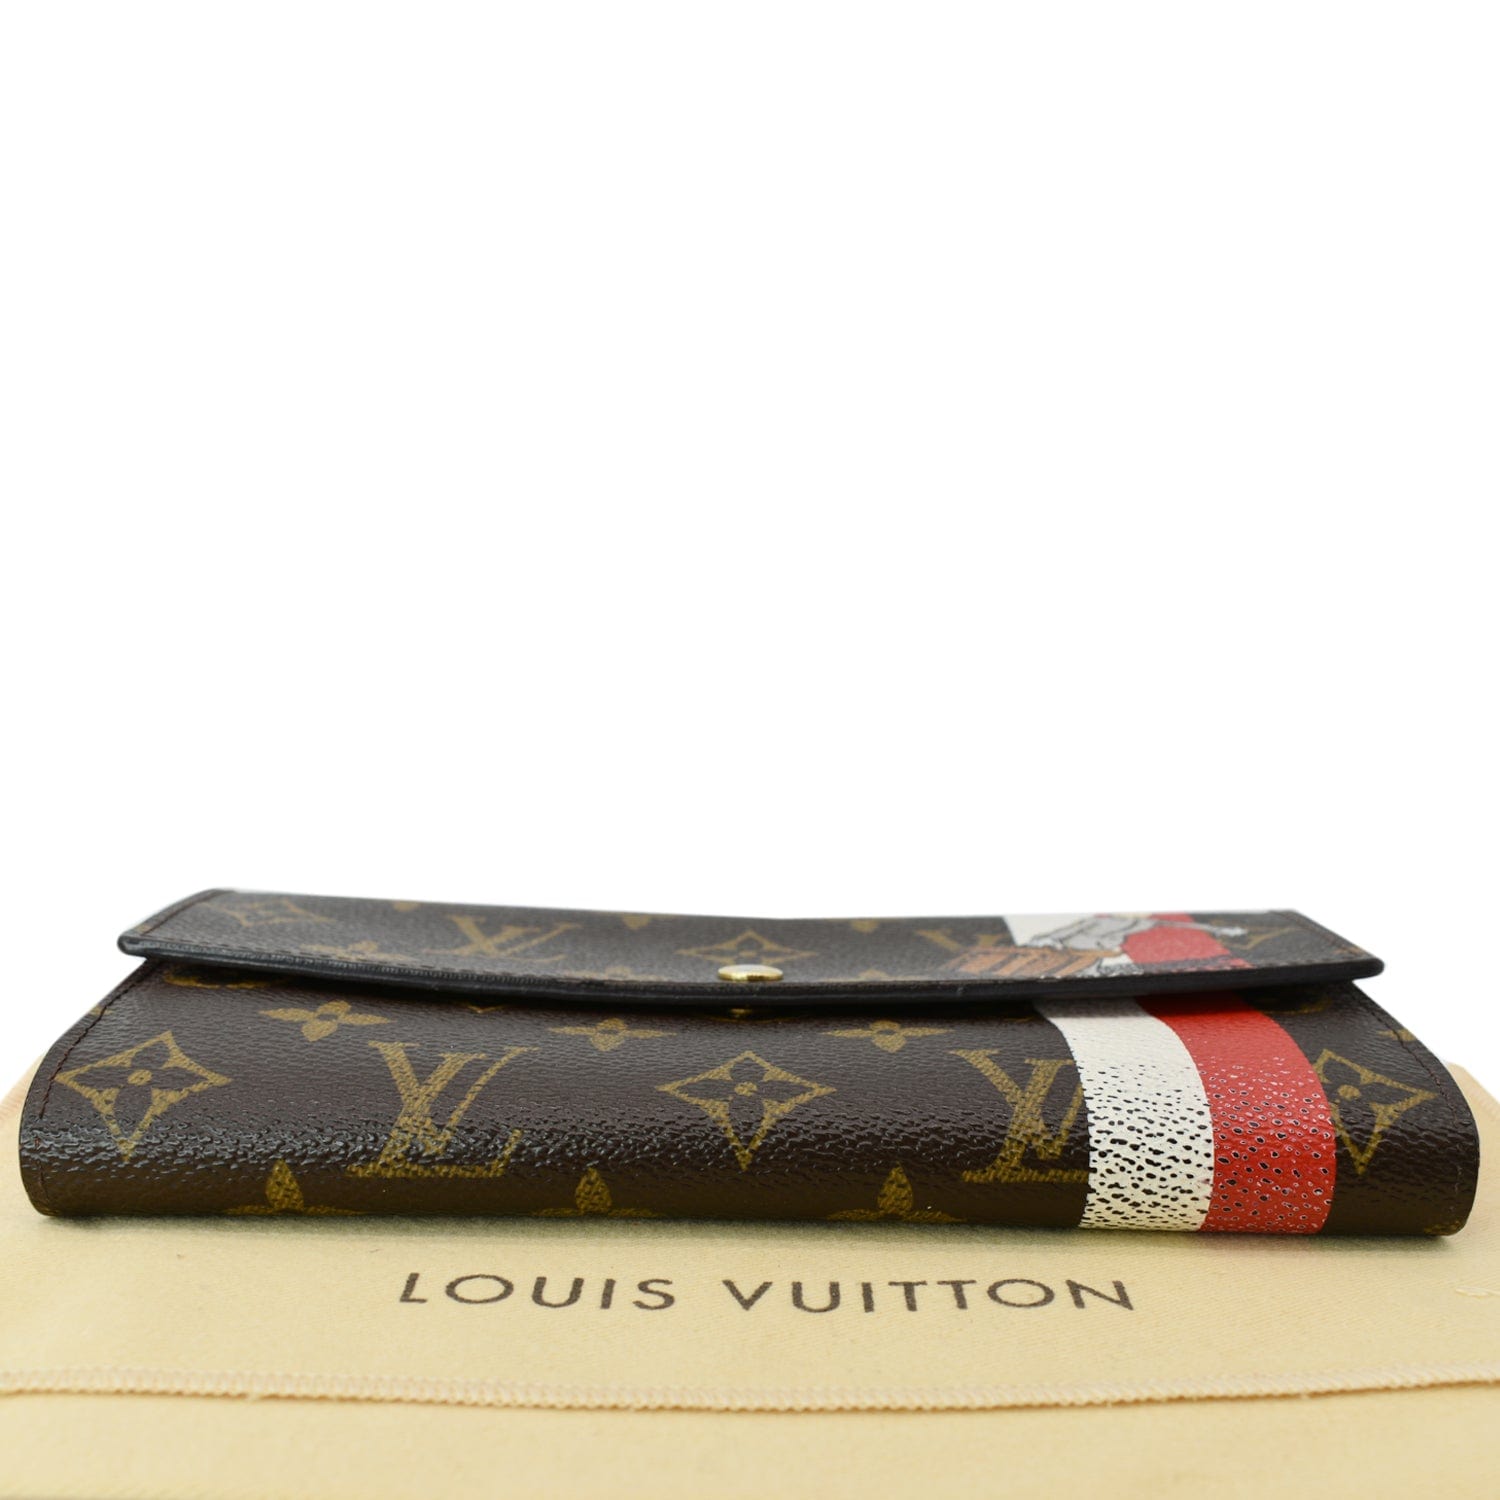 Authentic Rare Louis Vuitton Monogram Canvas Portefeuile Sarah